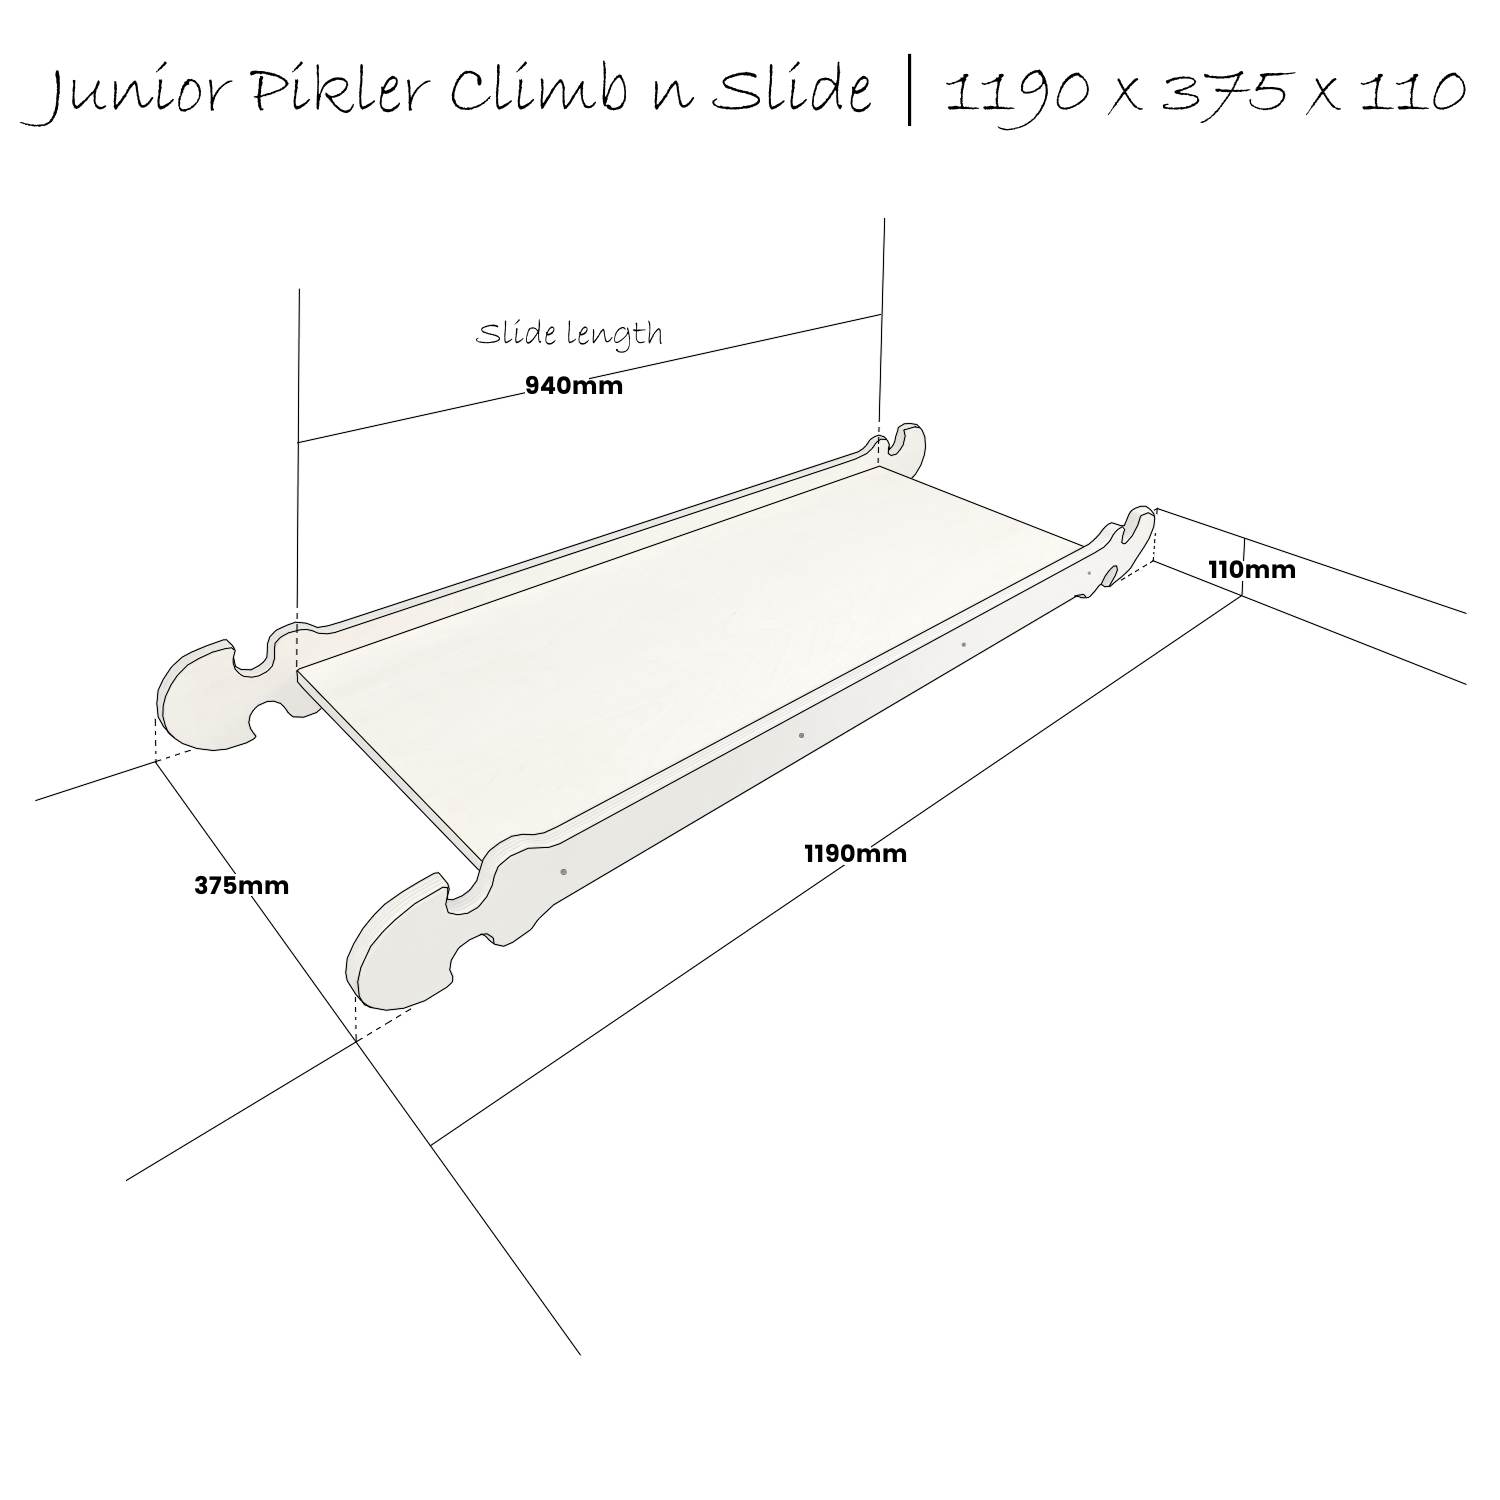 Junior Pikler Climb n Slide Schematic 1190x375x110